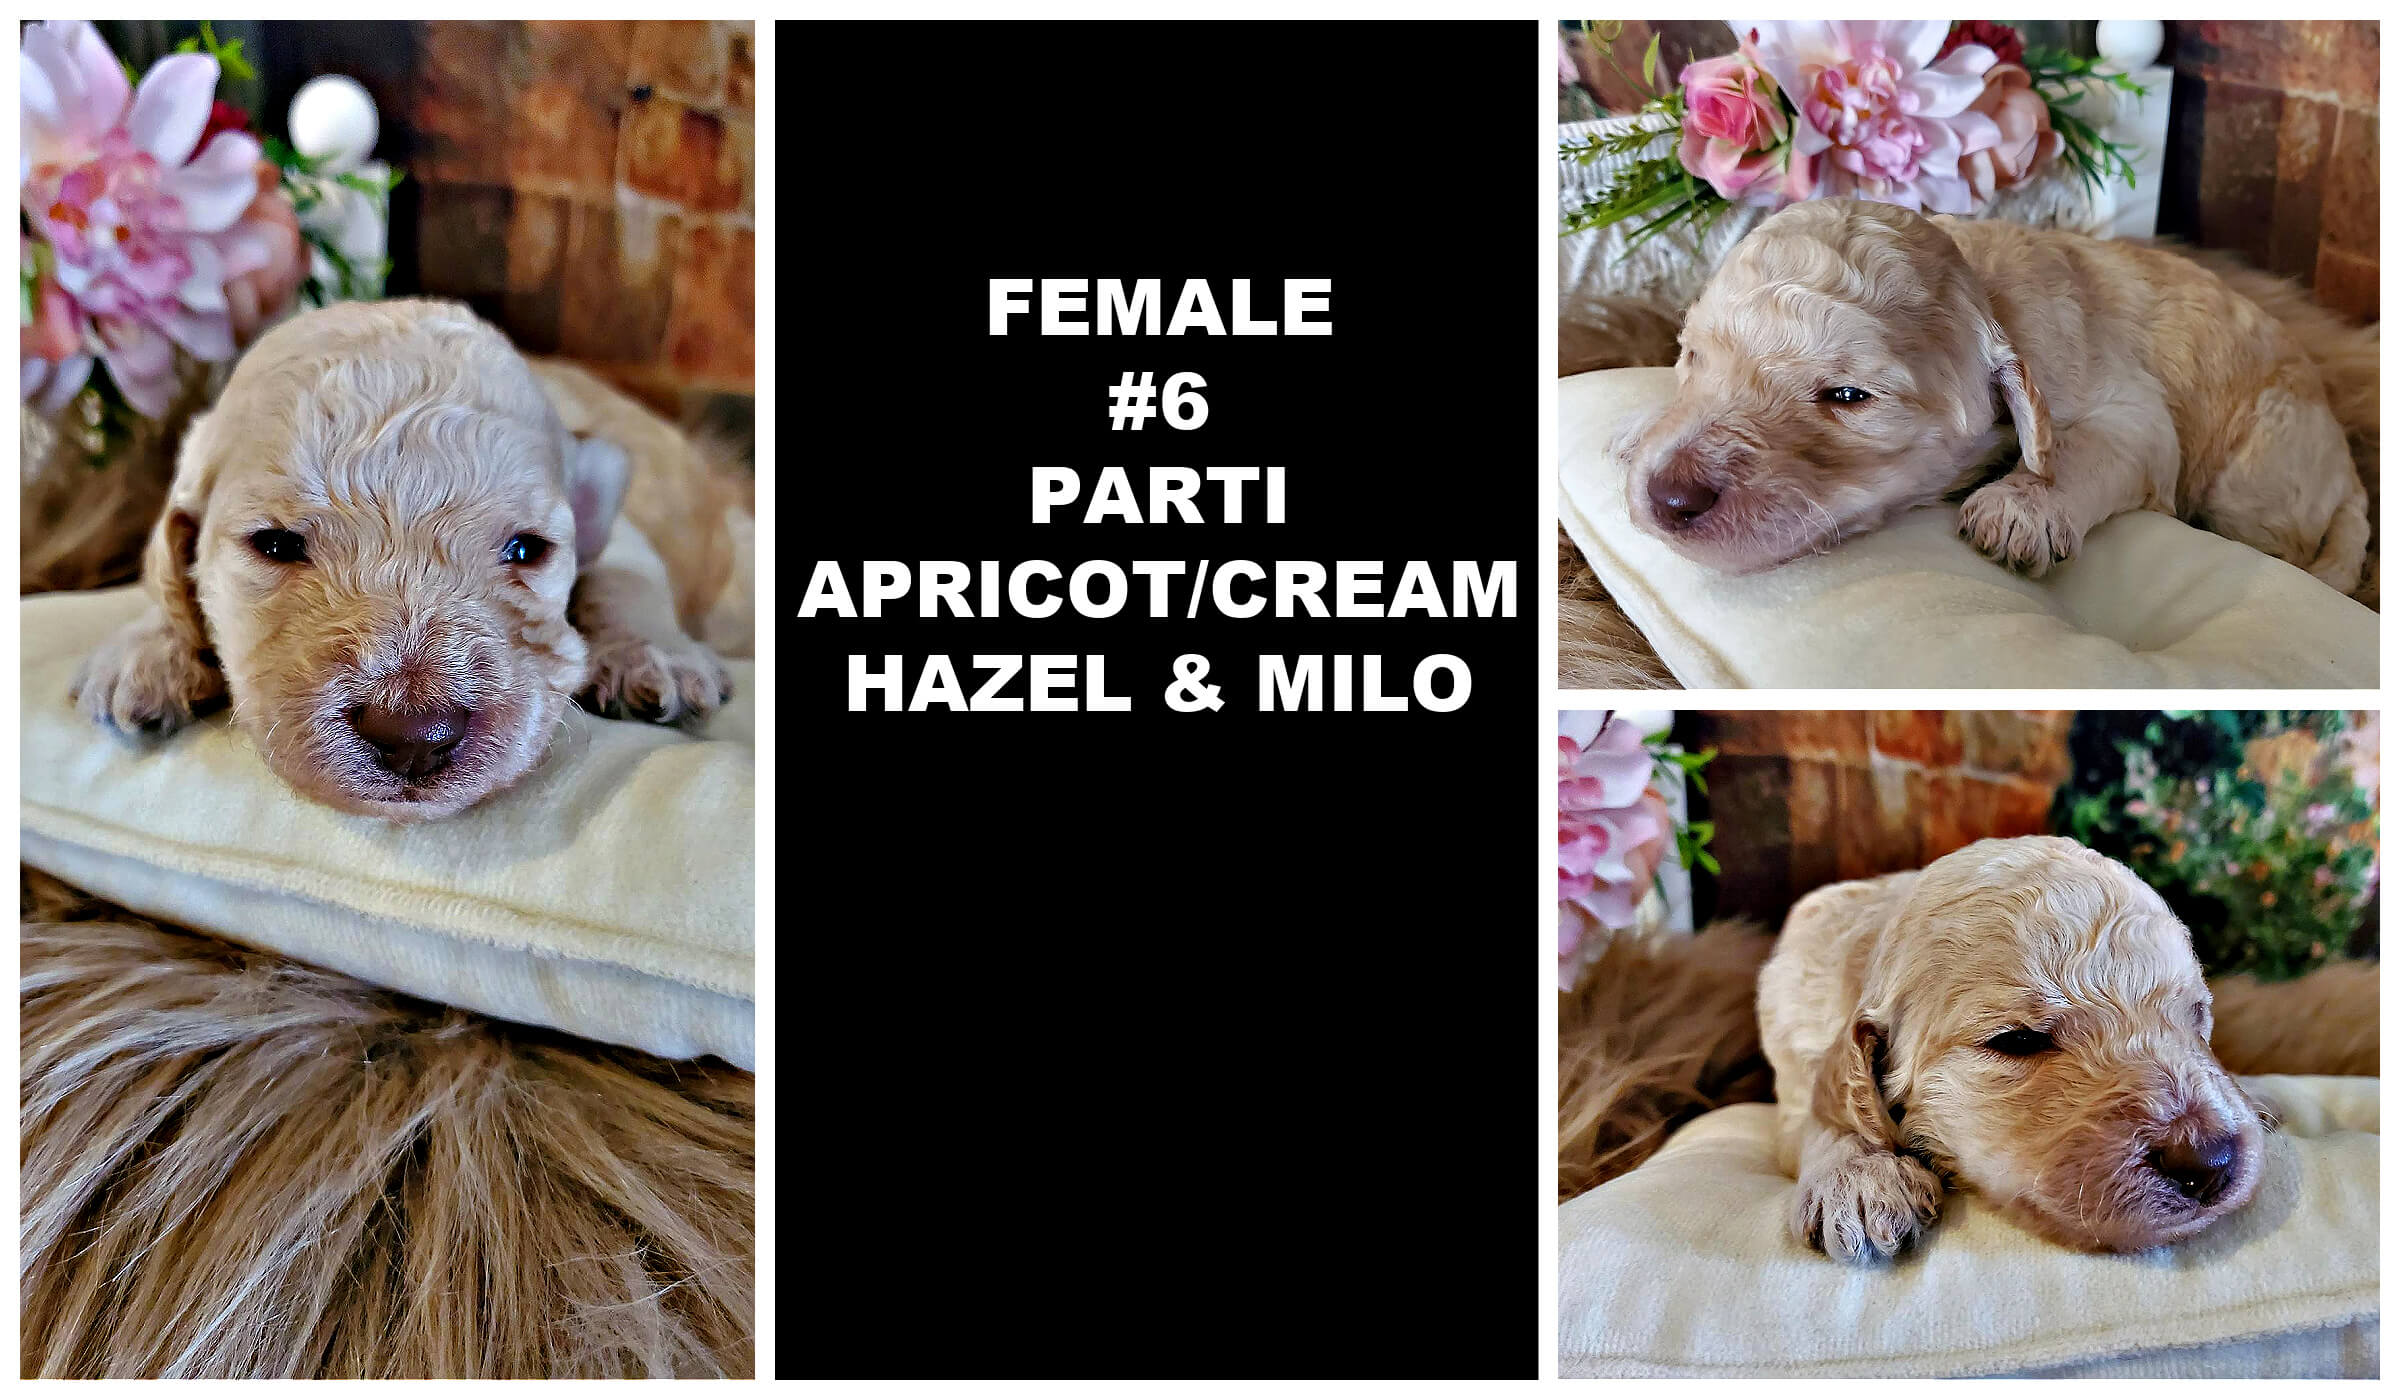 FEMALE #6 PARTI APRICOT_CREAM HAZEL AND MILO.